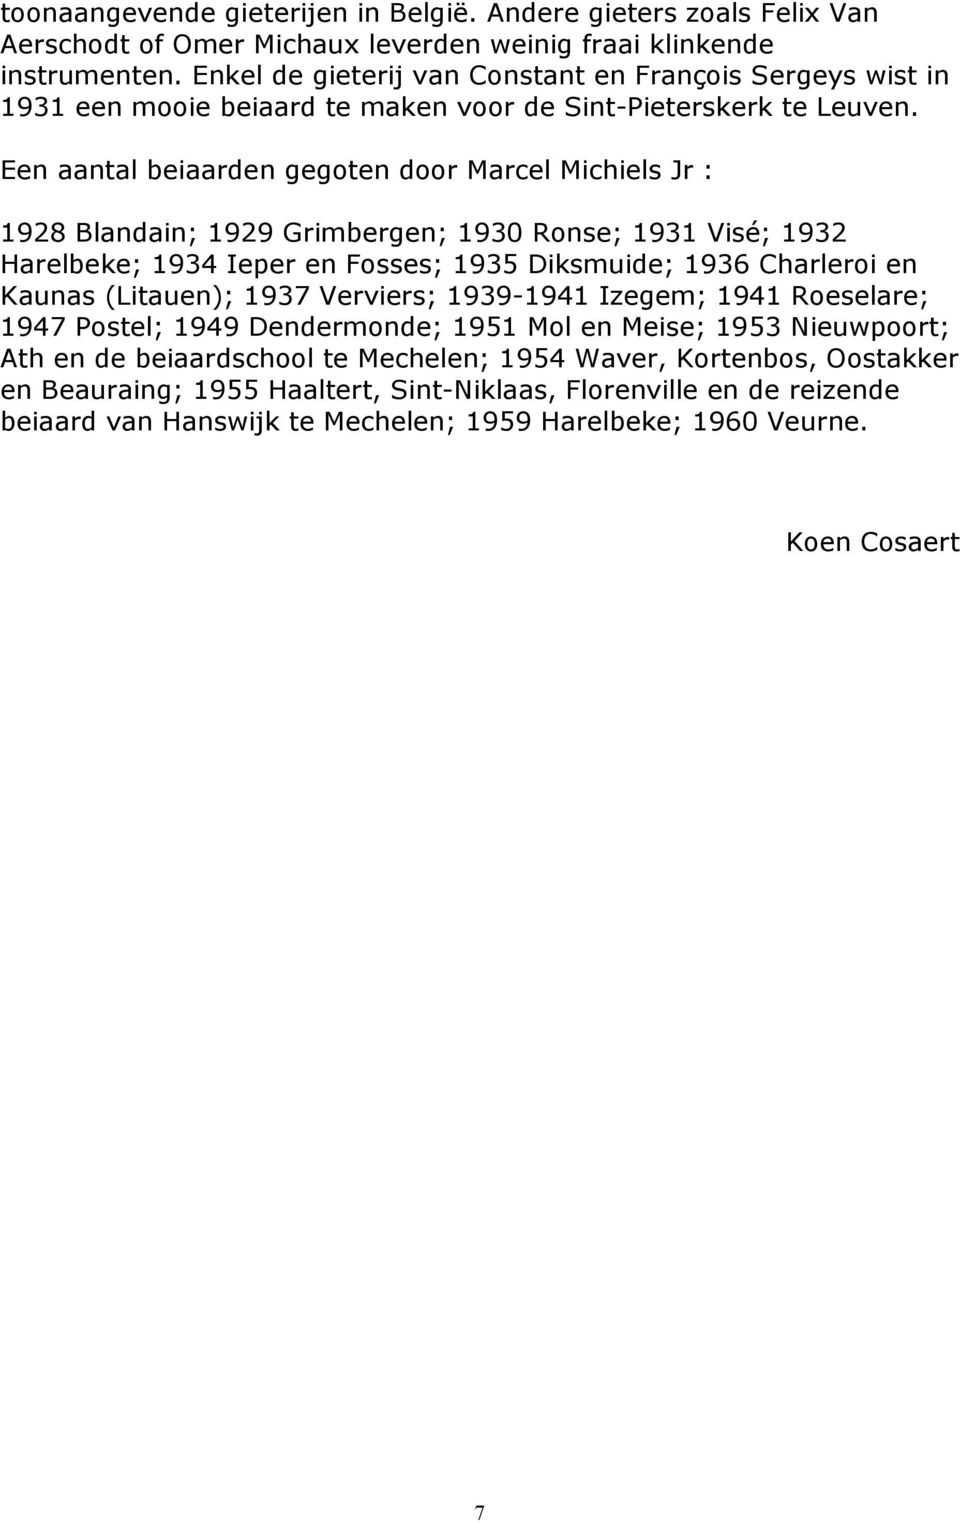 Een aantal beiaarden gegoten door Marcel Michiels Jr : 1928 Blandain; 1929 Grimbergen; 1930 Ronse; 1931 Visé; 1932 Harelbeke; 1934 Ieper en Fosses; 1935 Diksmuide; 1936 Charleroi en Kaunas (Litauen);